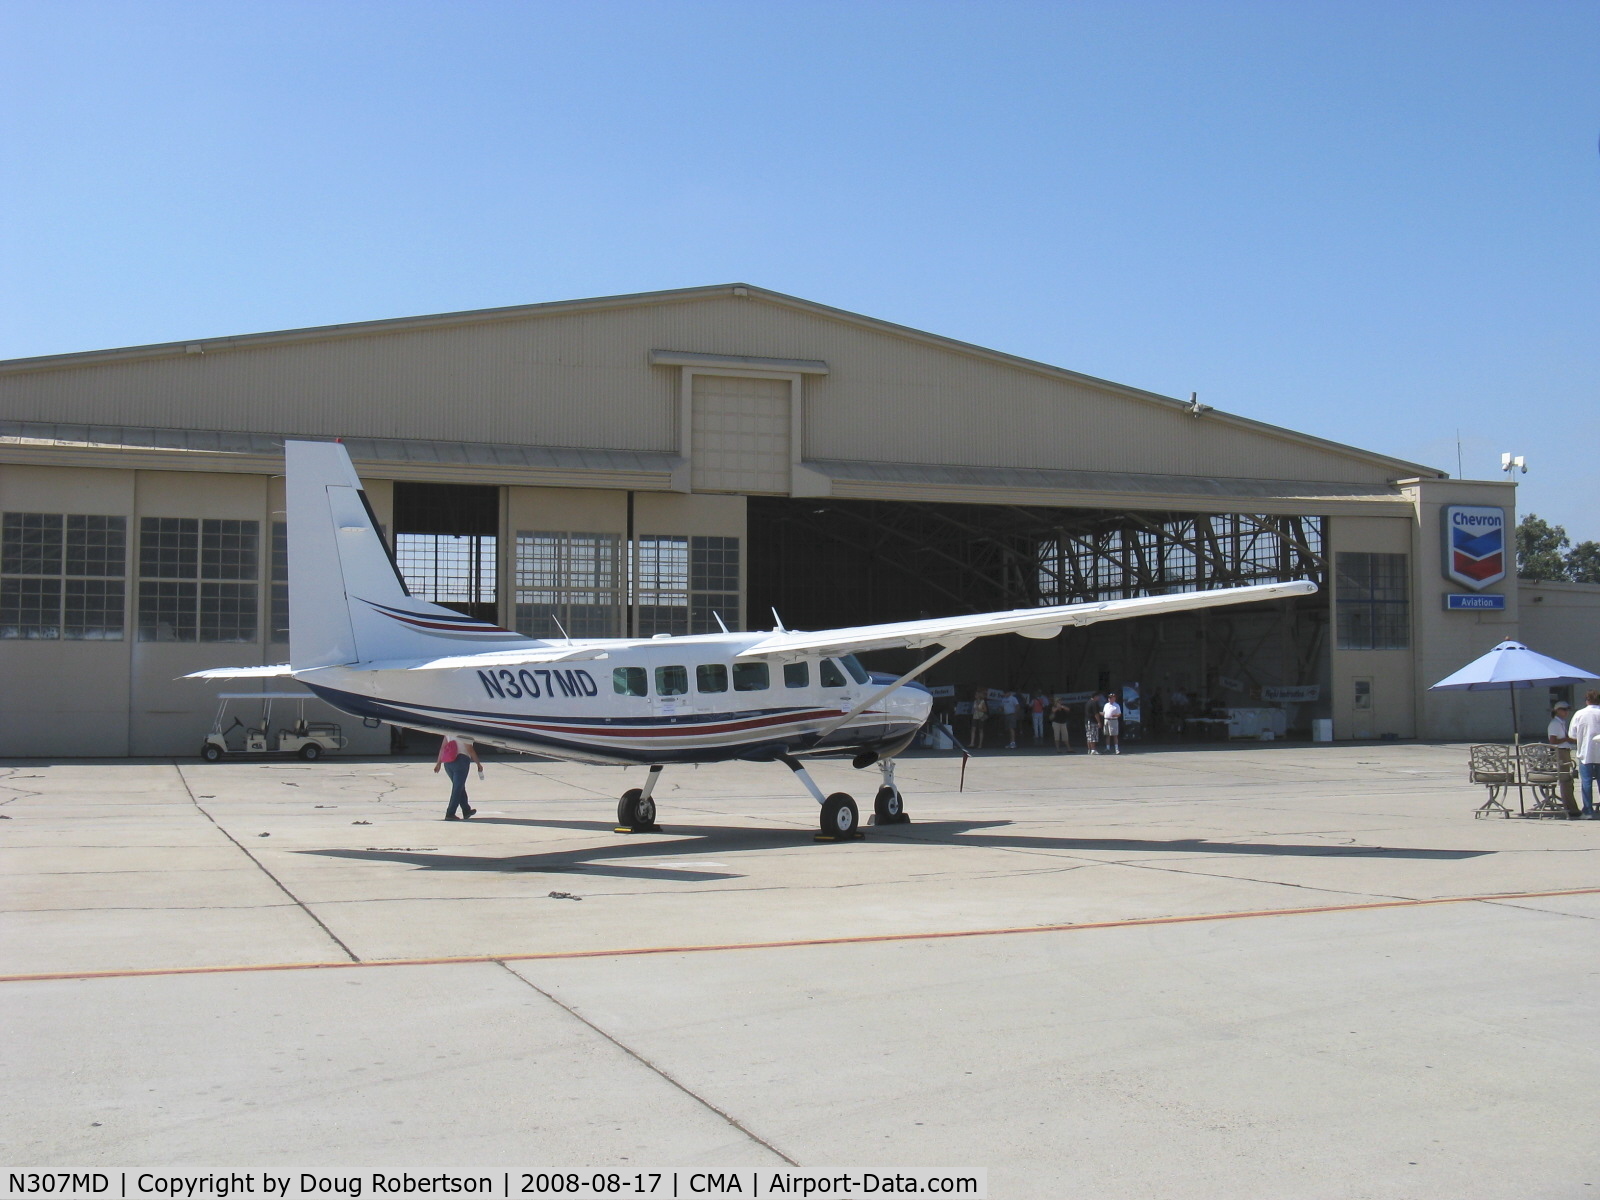 N307MD, 2004 Cessna 208 C/N 20800379, 2004 Cessna 208 CARAVAN, one P&W(C) PT6A-114A 675 shp turboprop